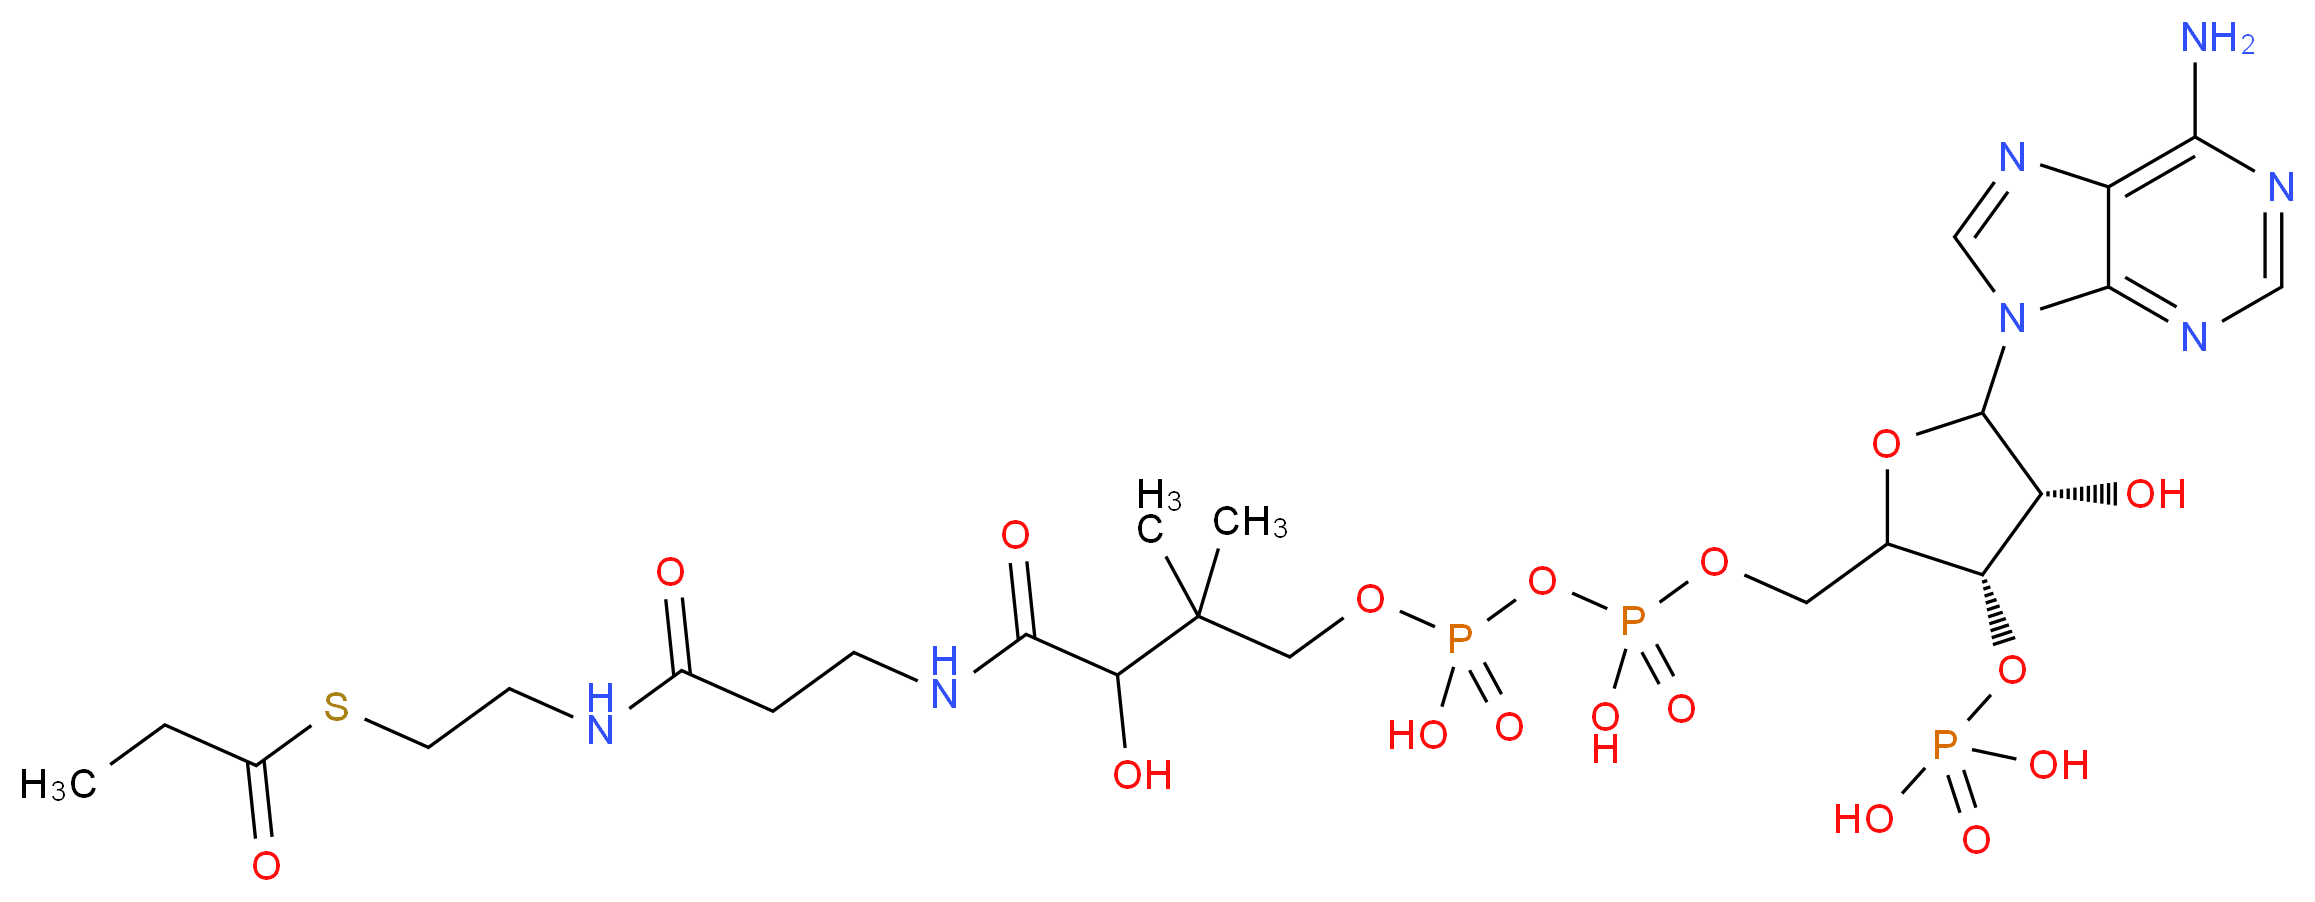 317-66-8 molecular structure